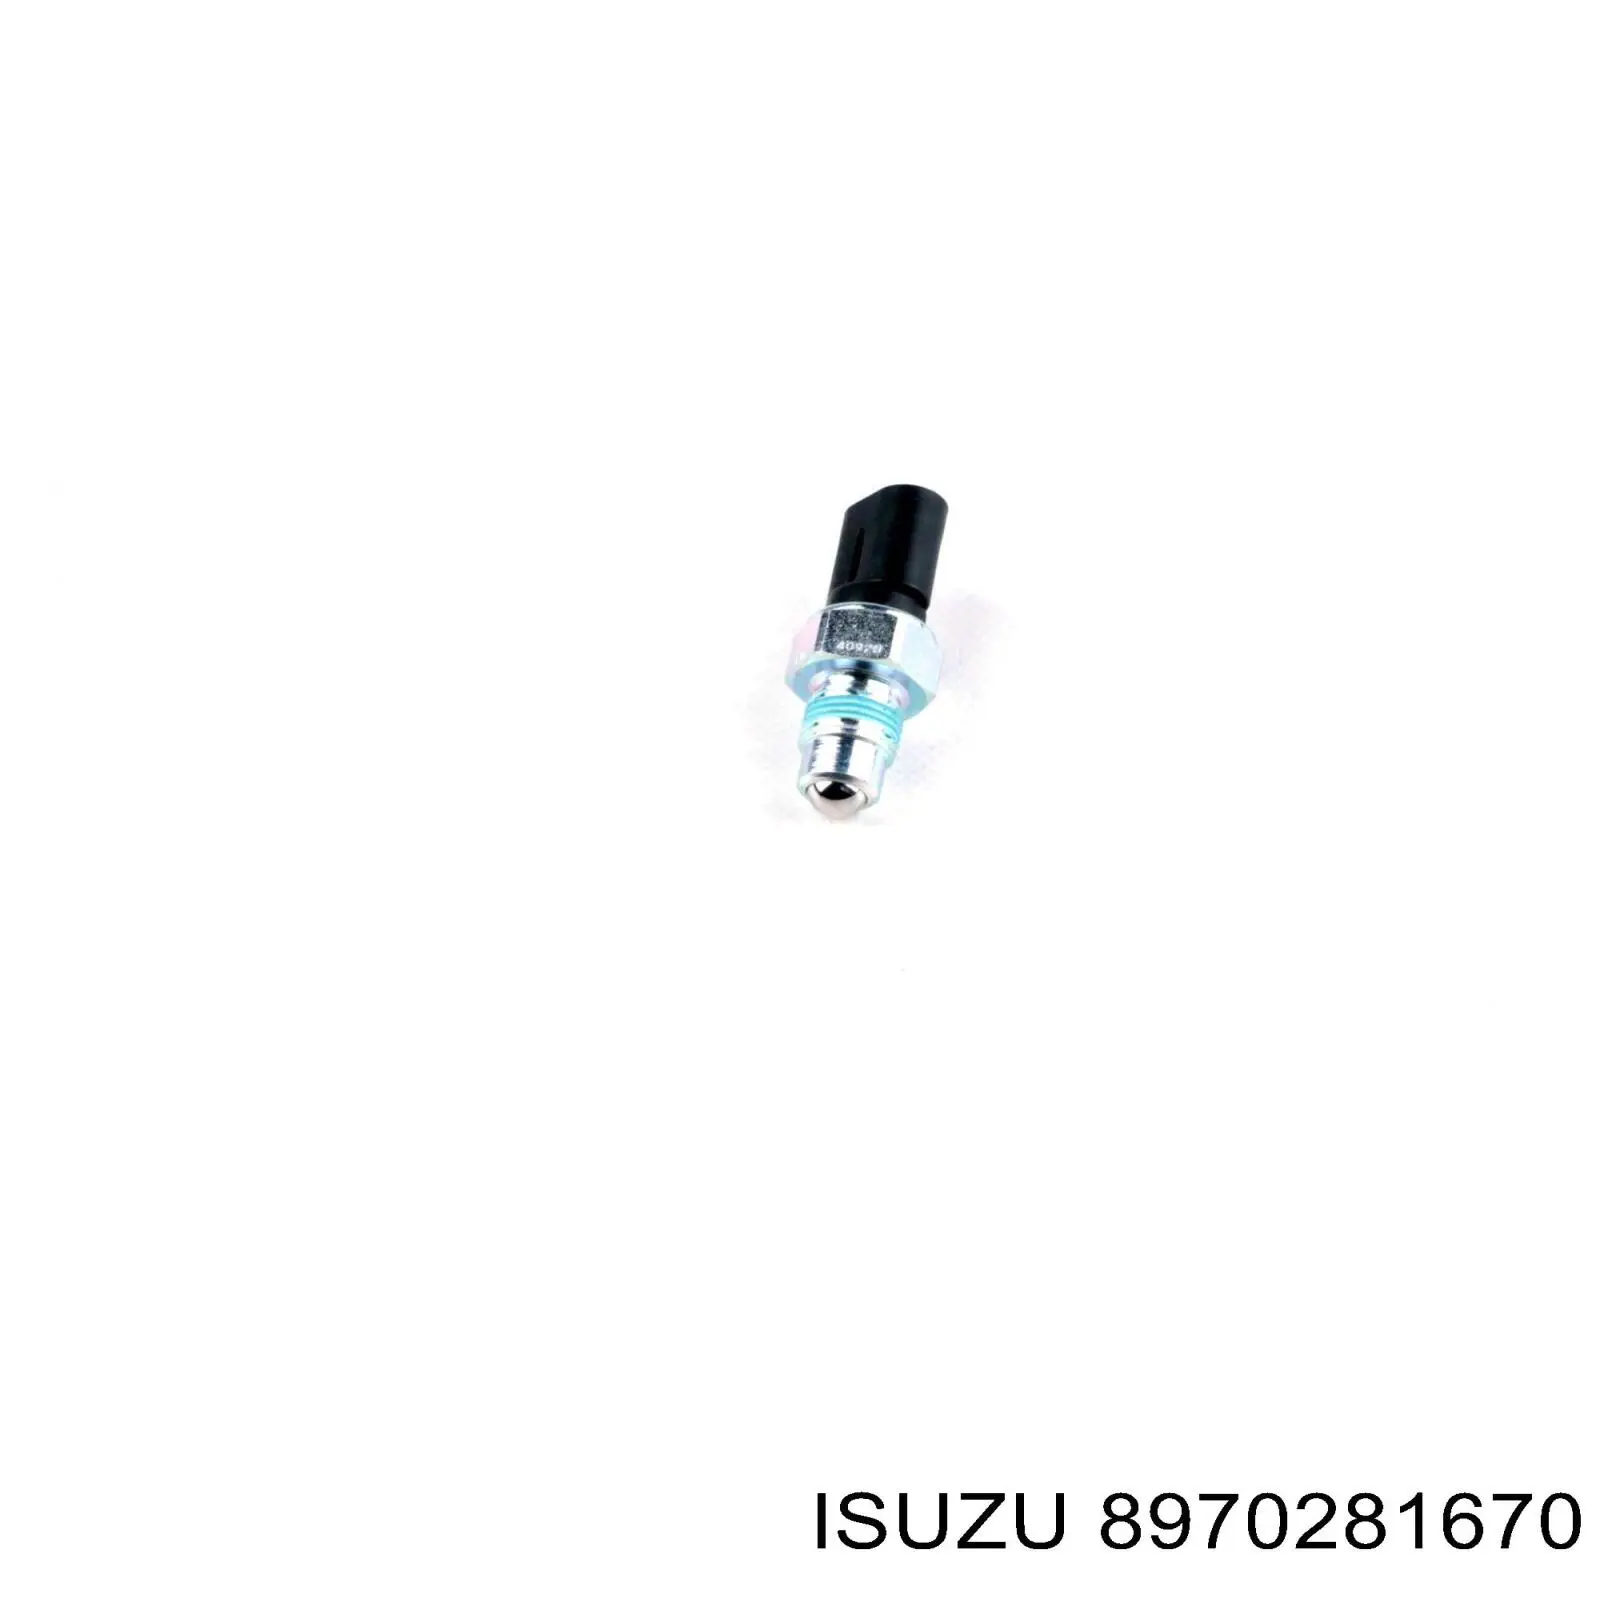 8970281670 Isuzu датчик включения фонарей заднего хода